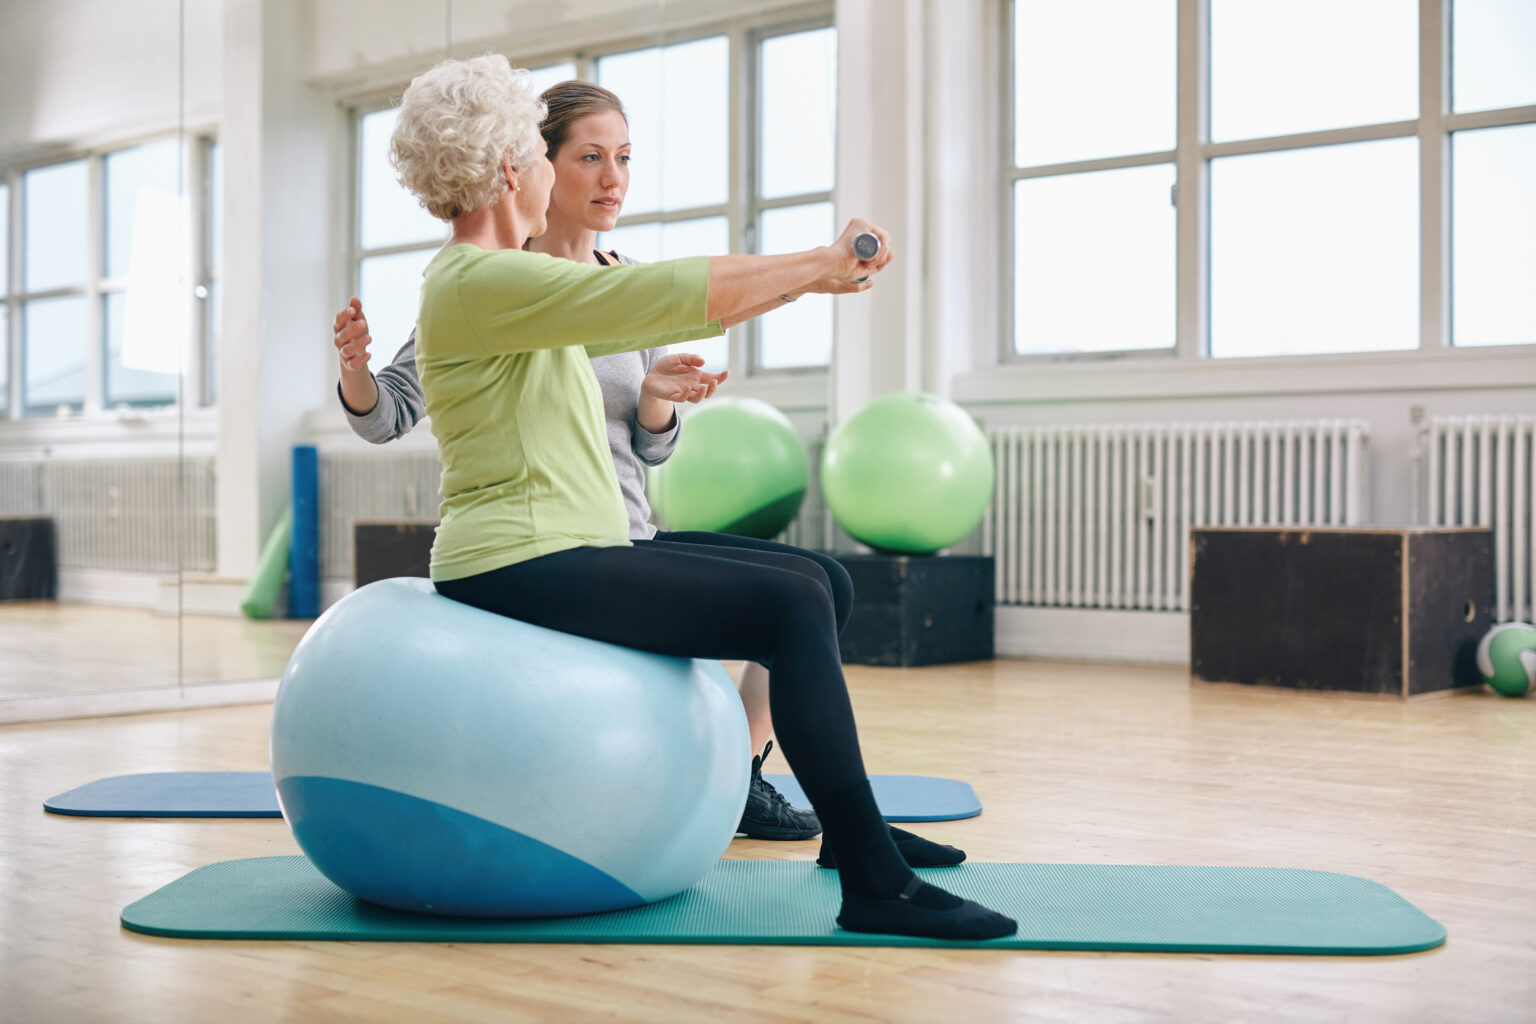 Das Bild zeigt eine ältere Frau, die unter Anleitung Übungen auf einem Sitzball durchführt.